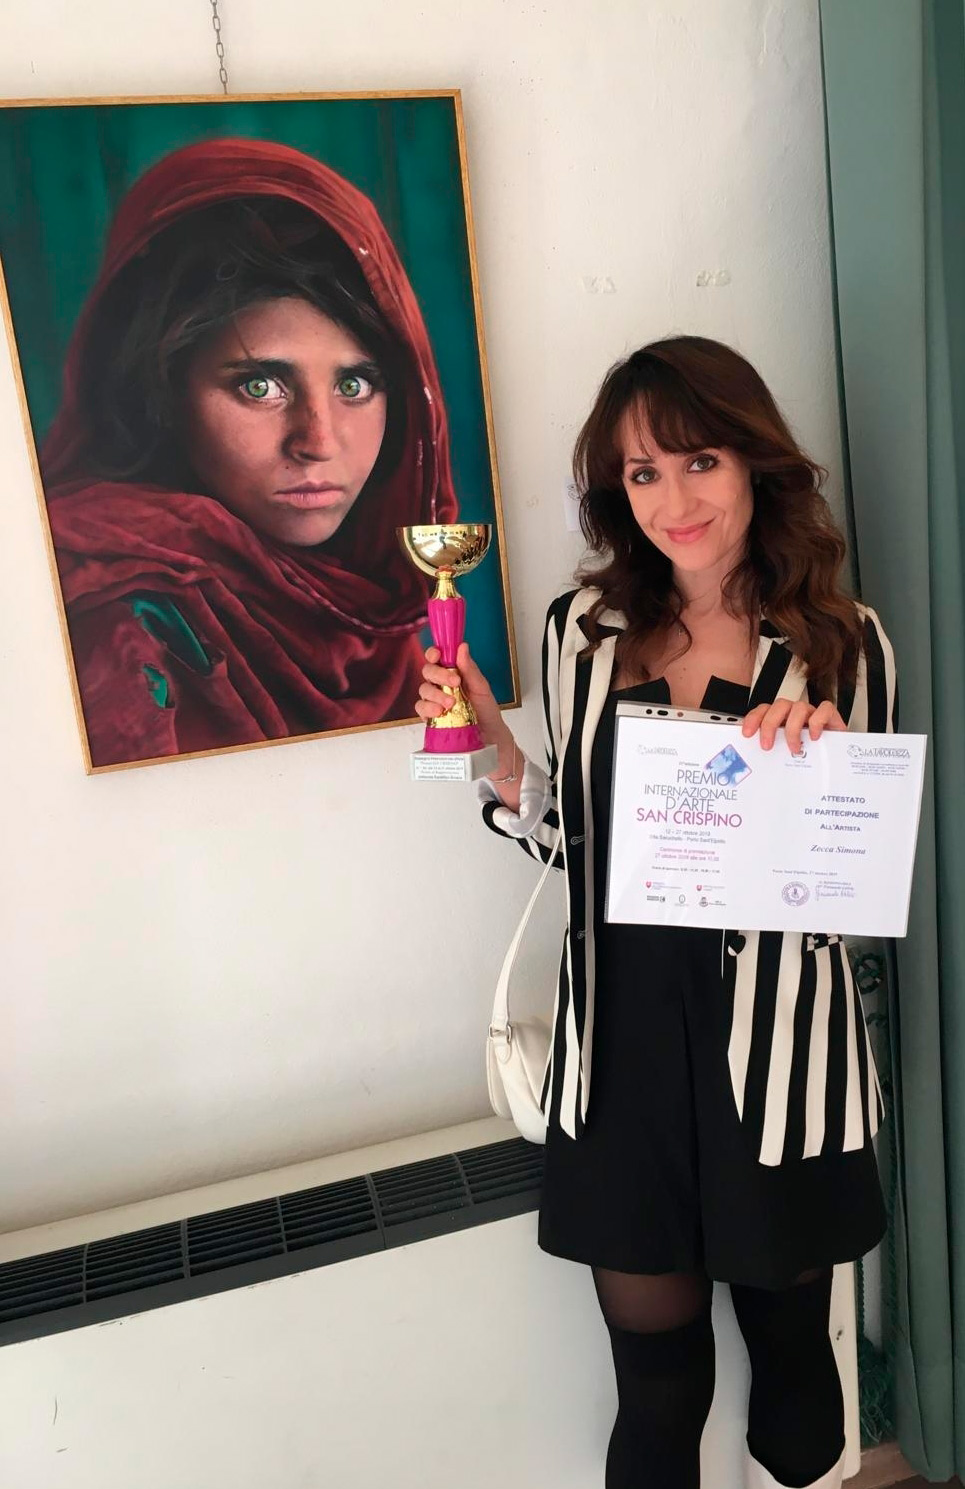 Simona Zecca regge una coppa vinta per il dipinto che ritrae la famosa ragazza afgana, appeso al muro affianco a lei 